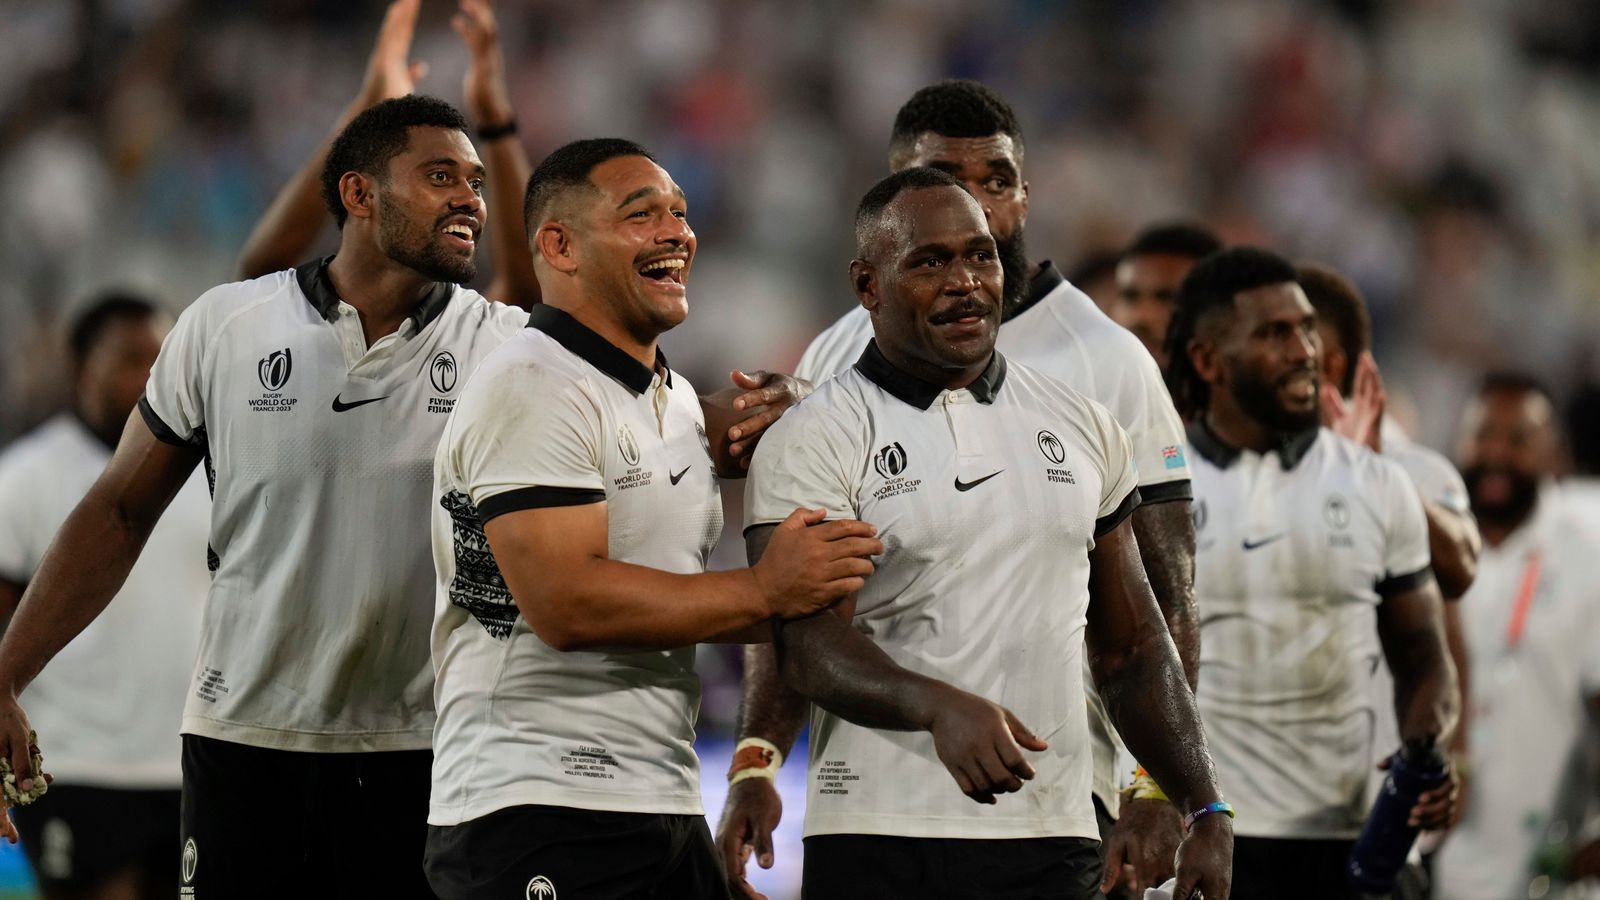 Copa do Mundo de Rugby: Fiji revida, vence a Geórgia e avança para as quartas de final |  Notícias da União de Rugby